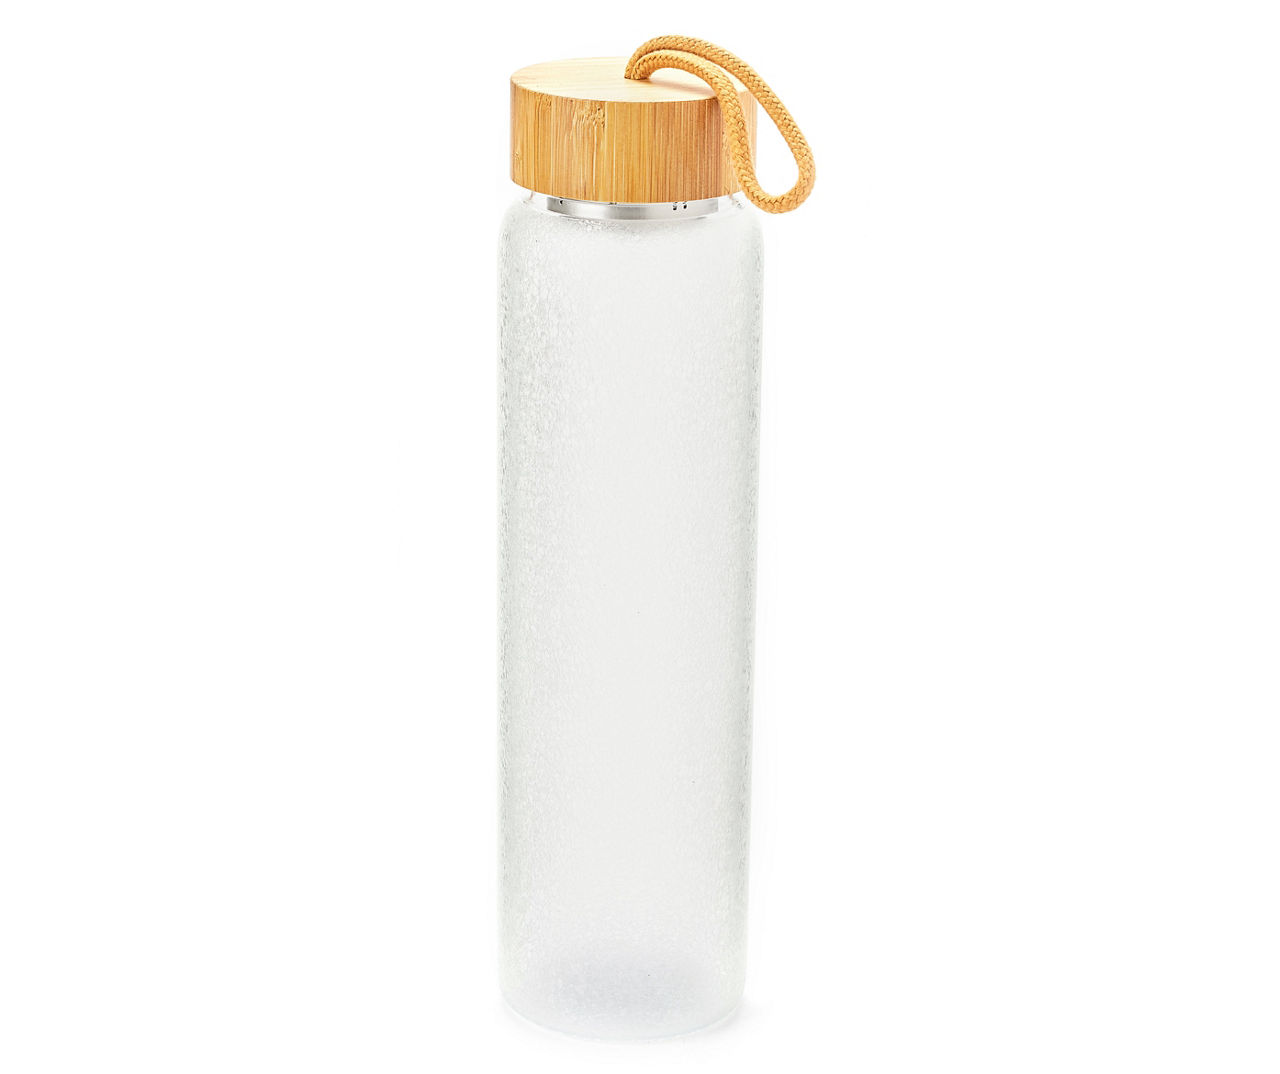 Manna - Gray XL Chugger Water Bottle, 68 oz.